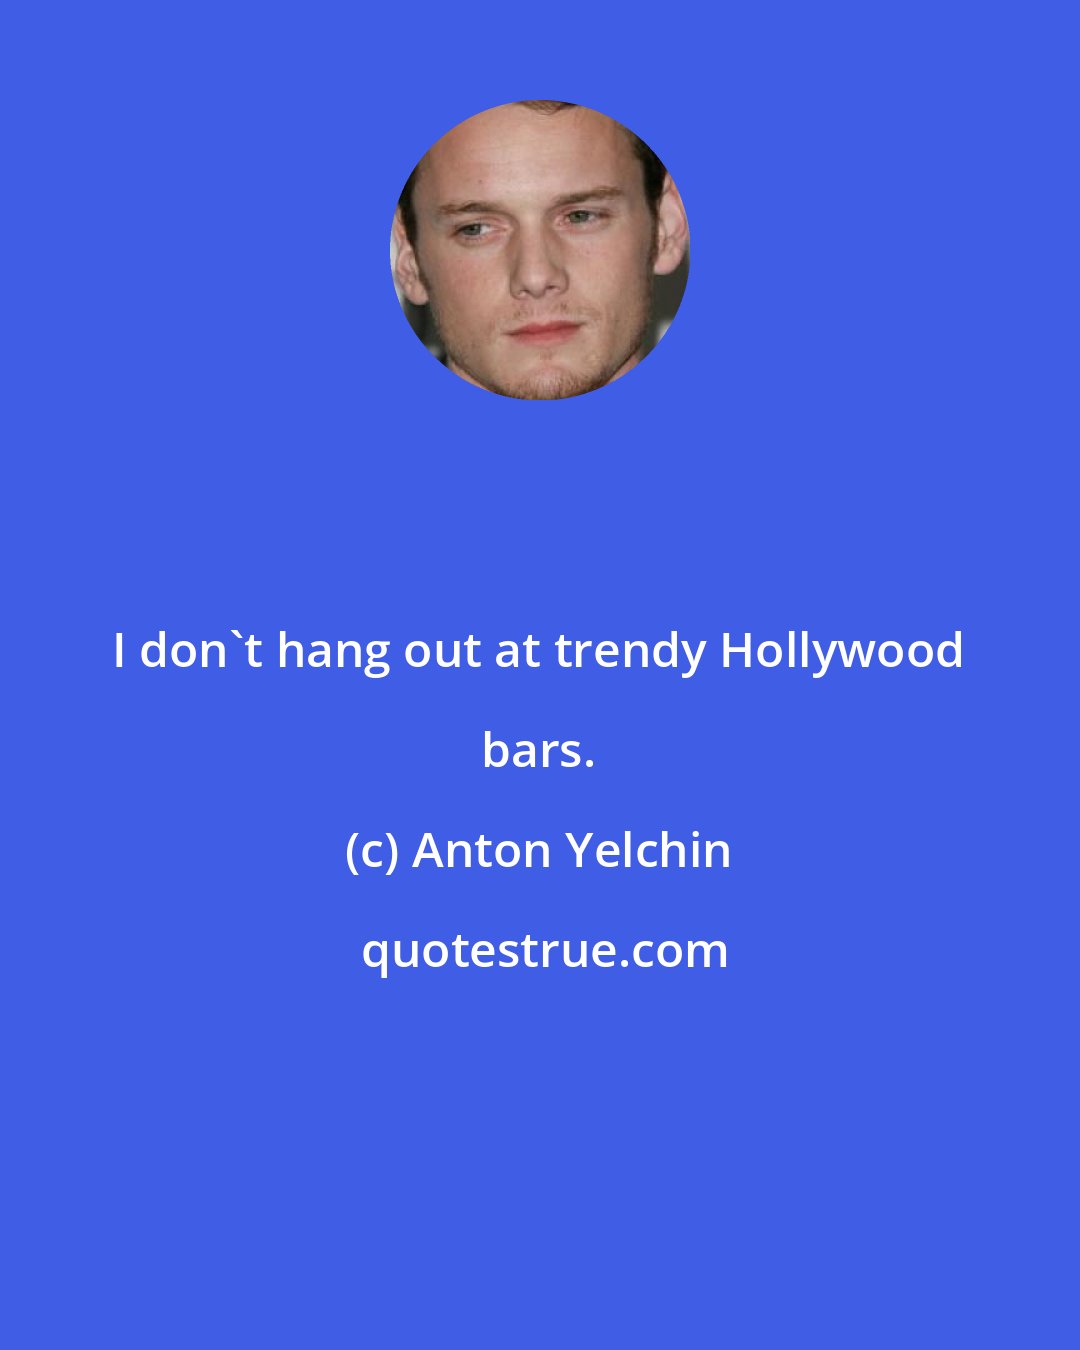 Anton Yelchin: I don't hang out at trendy Hollywood bars.